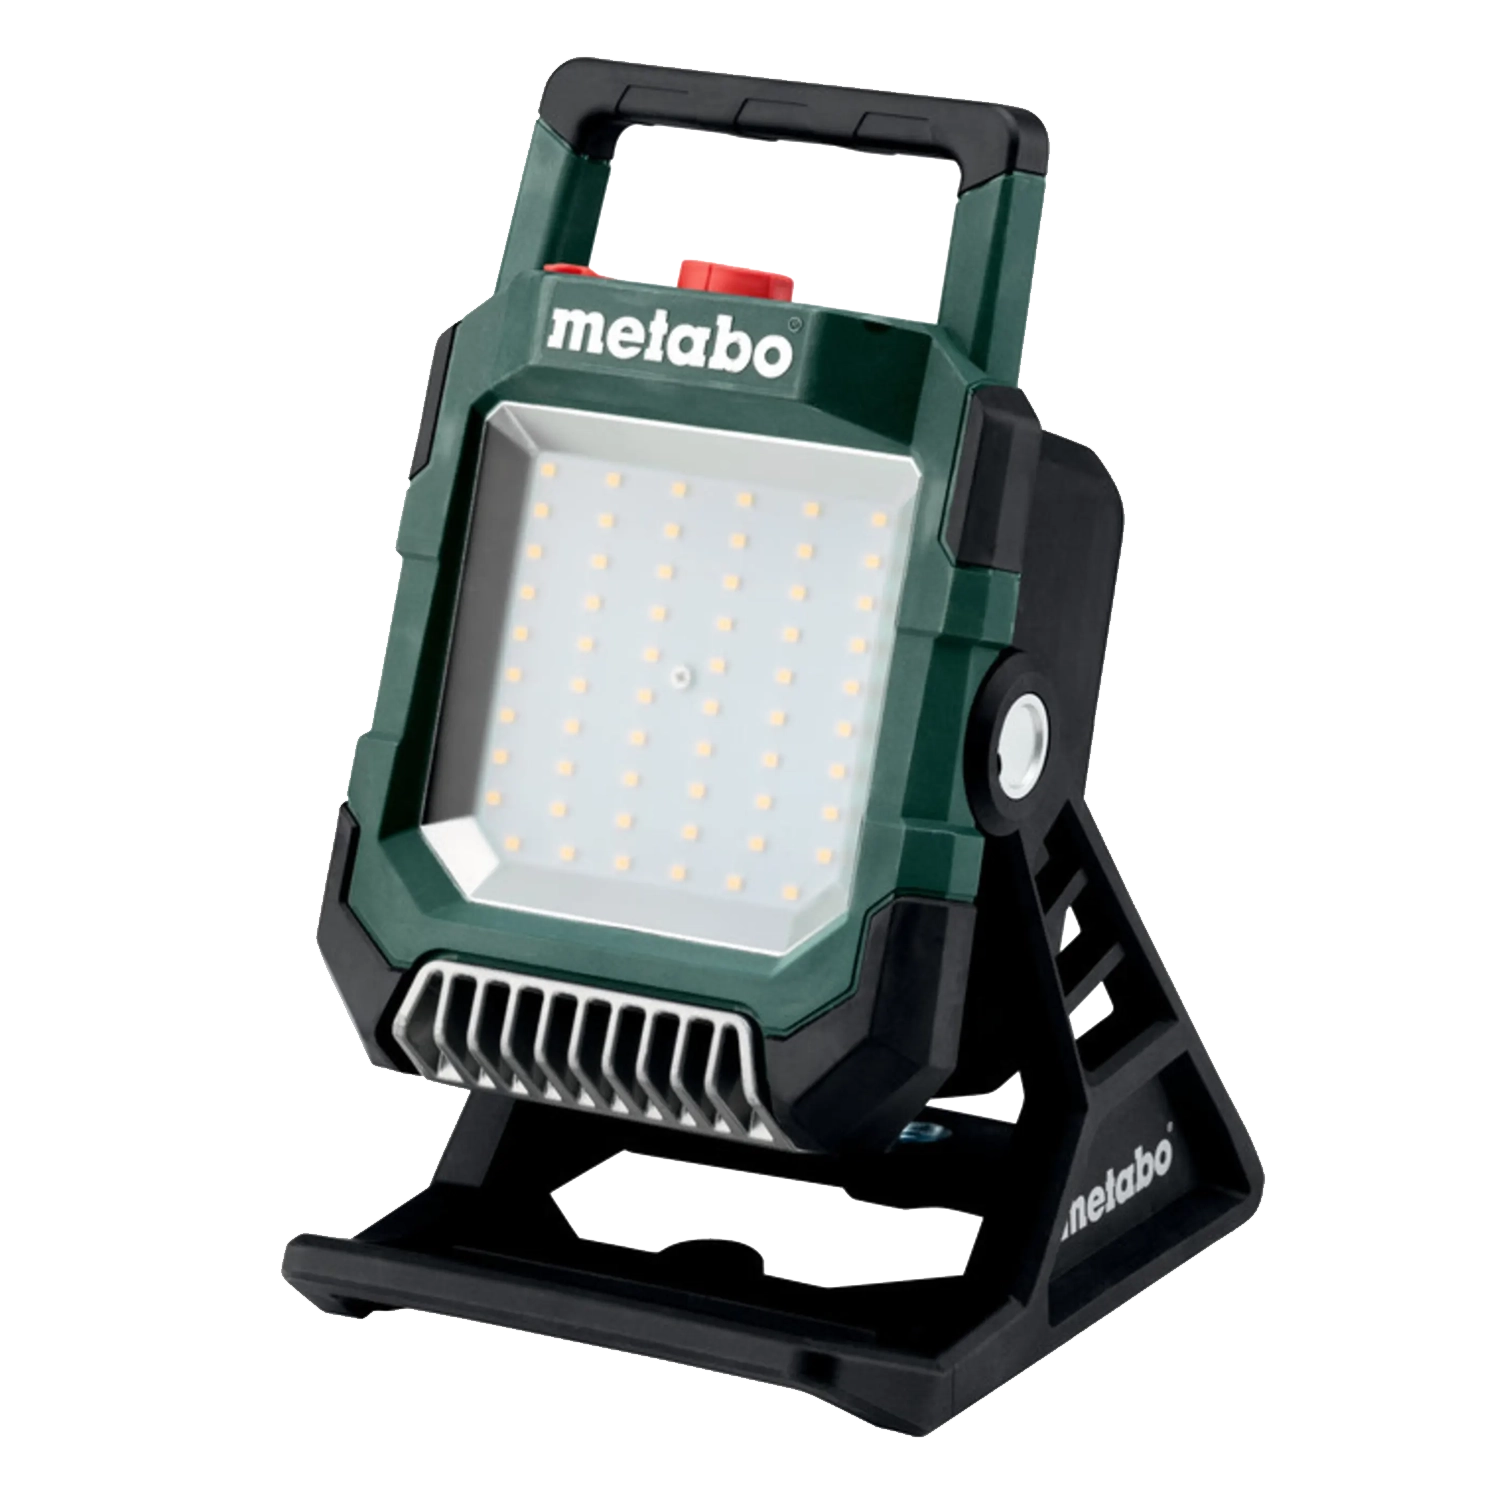 Metabo Accu Werflamp - BouwLamp BSA 18 LED 4000: Krachtige 18V werflamp zonder accu, biedt heldere verlichting op de bouwplaats.